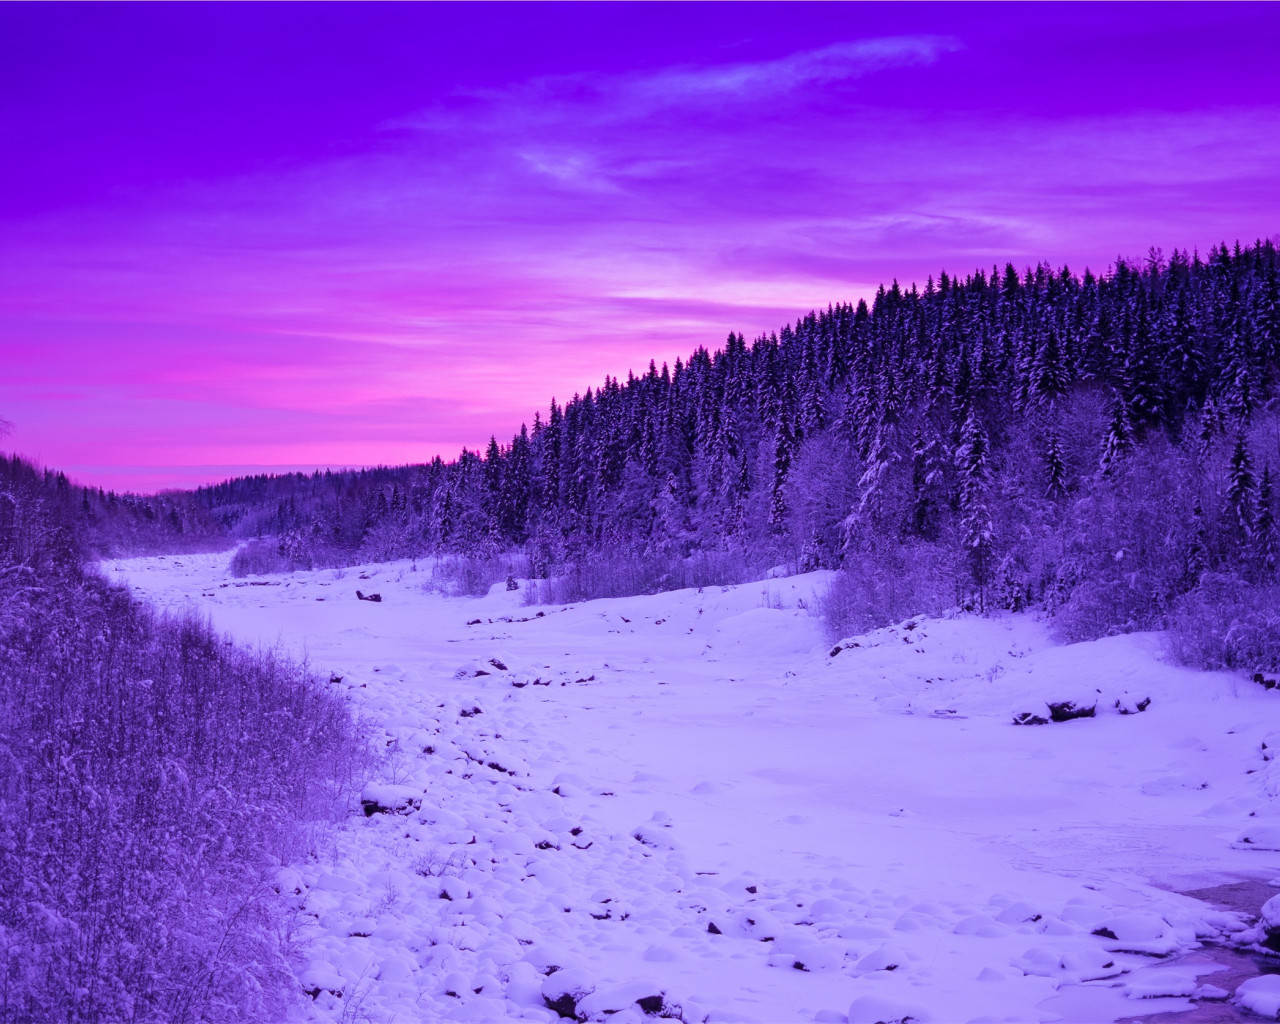 Krajobraz sceniczny zimą o zachodzie słońca